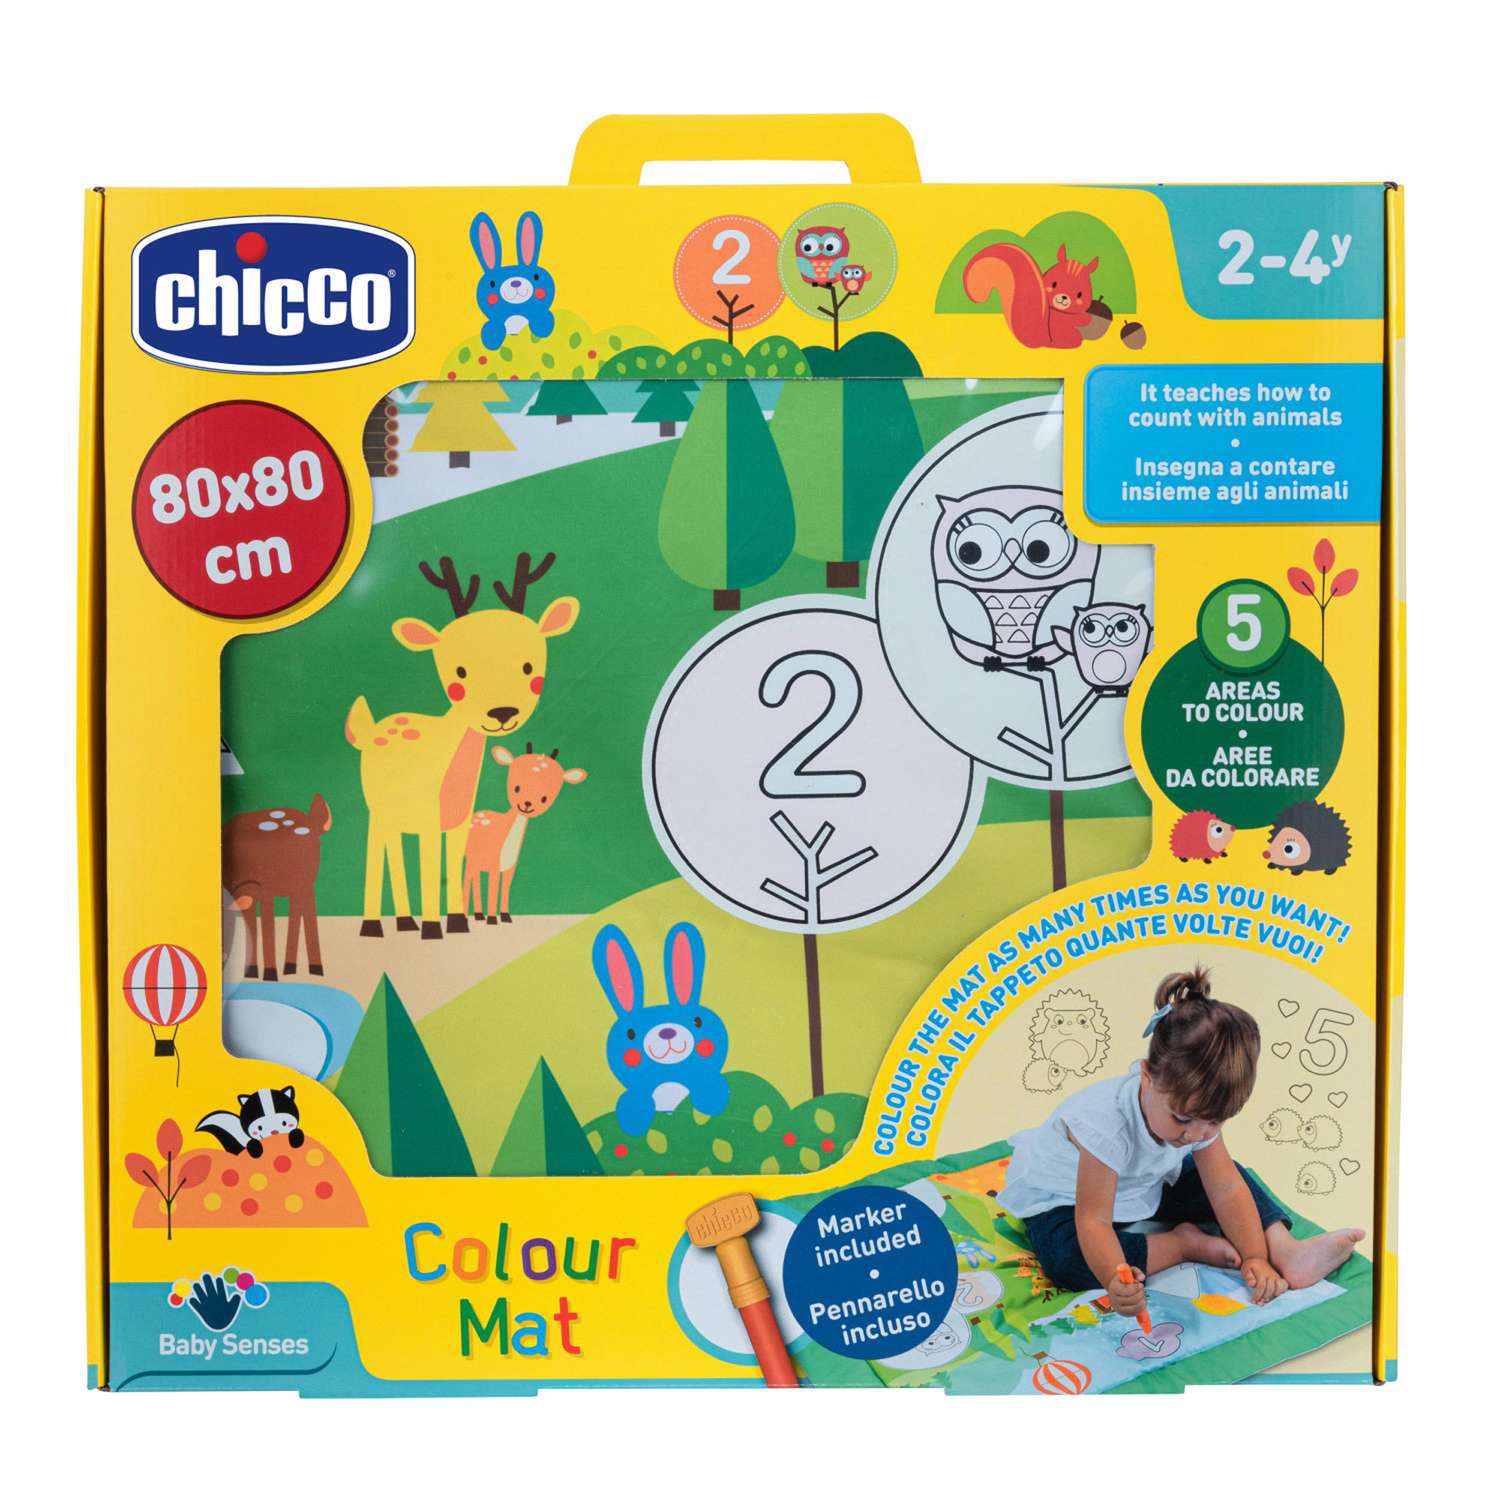 Коврик CHICCO Игровой развивающий детский коврик Colour Mat - фото 2